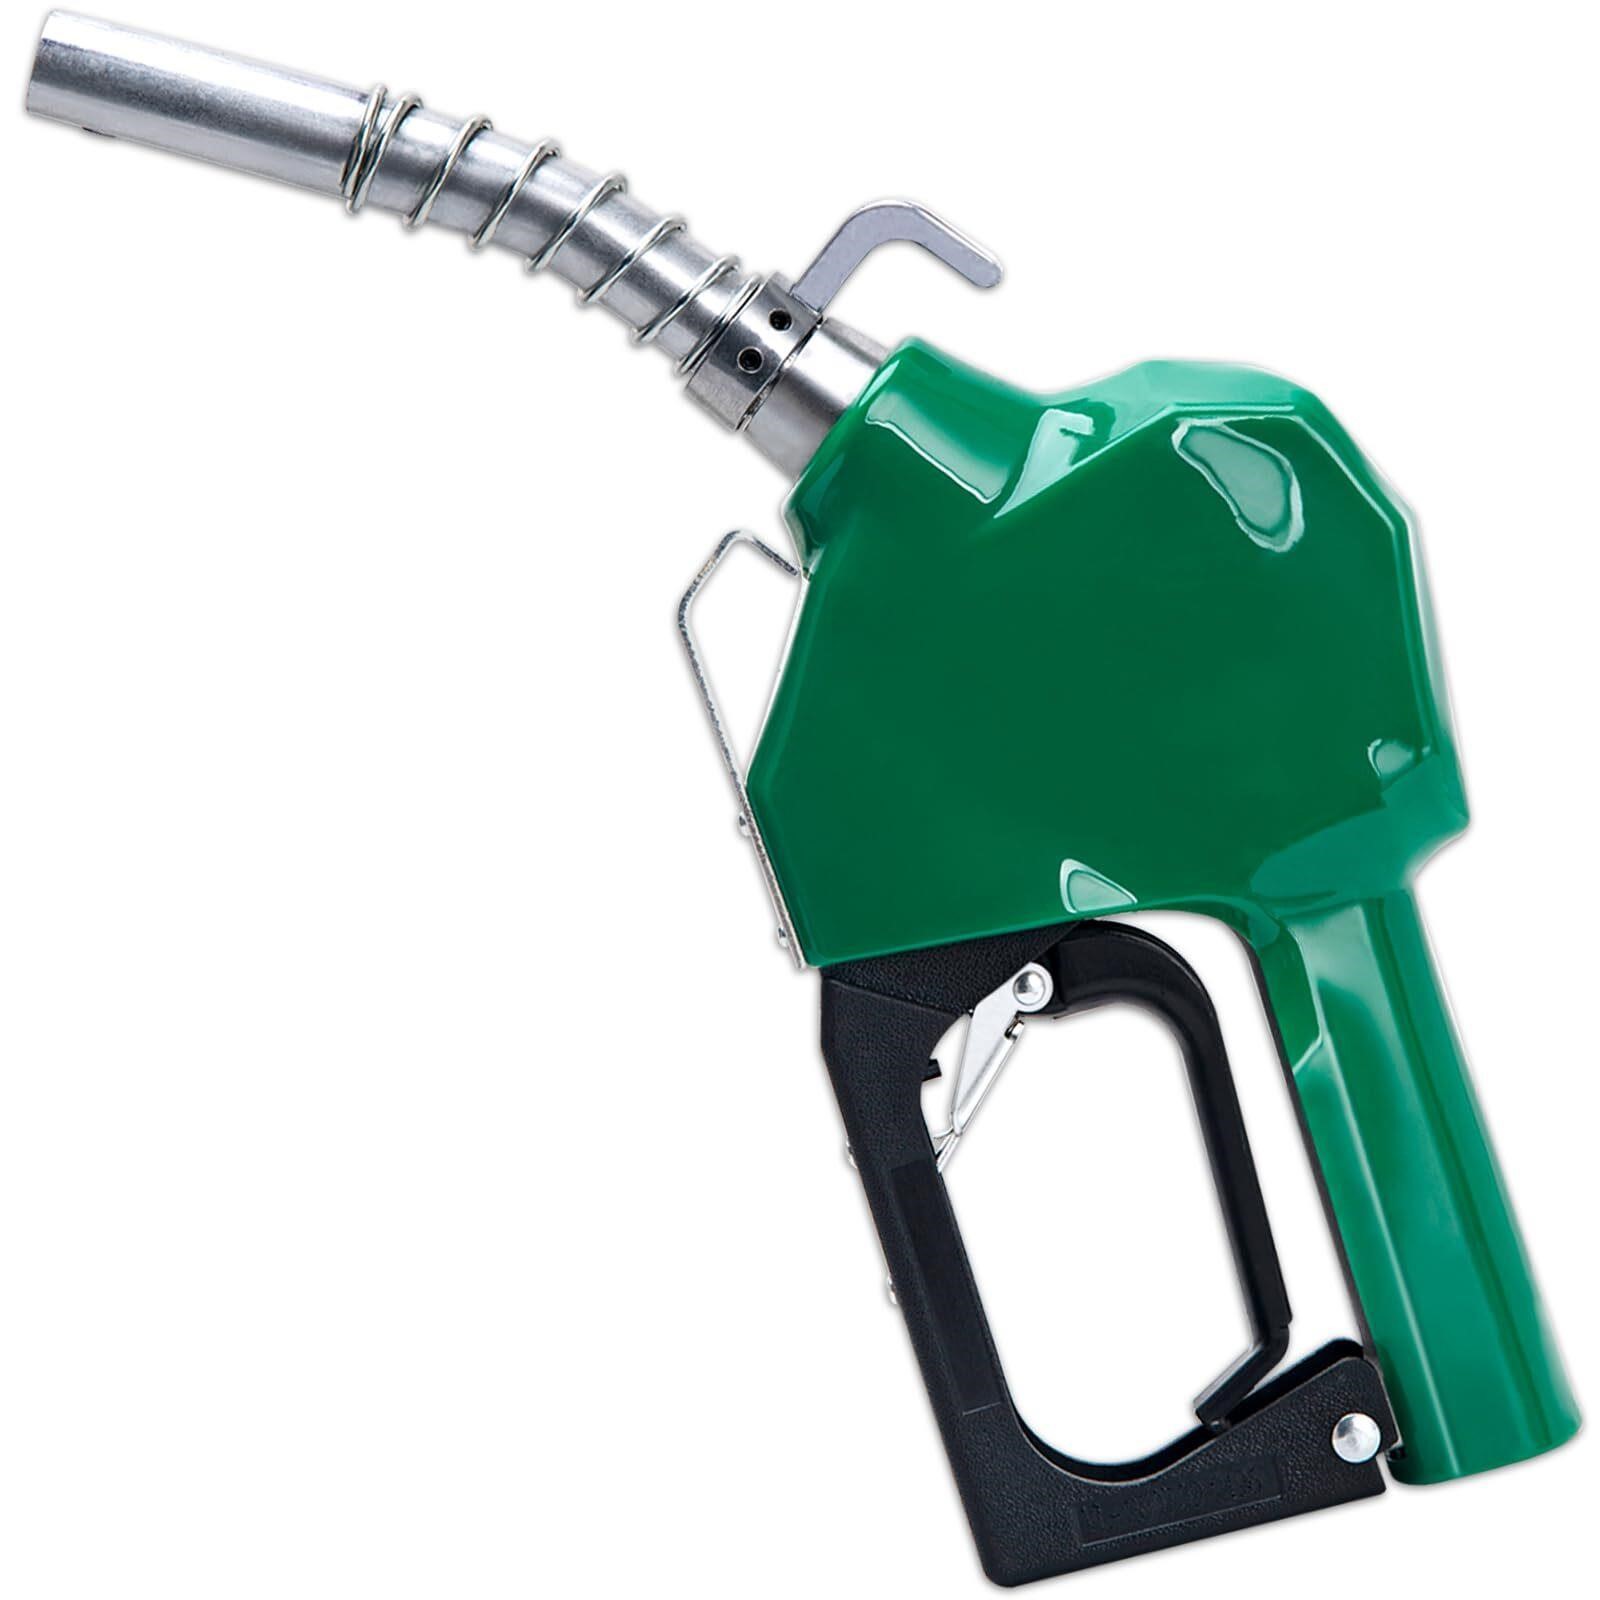 Fuel Nozzle, 3/4 Inch NPT Fuel Nozzle, Gas Nozzle